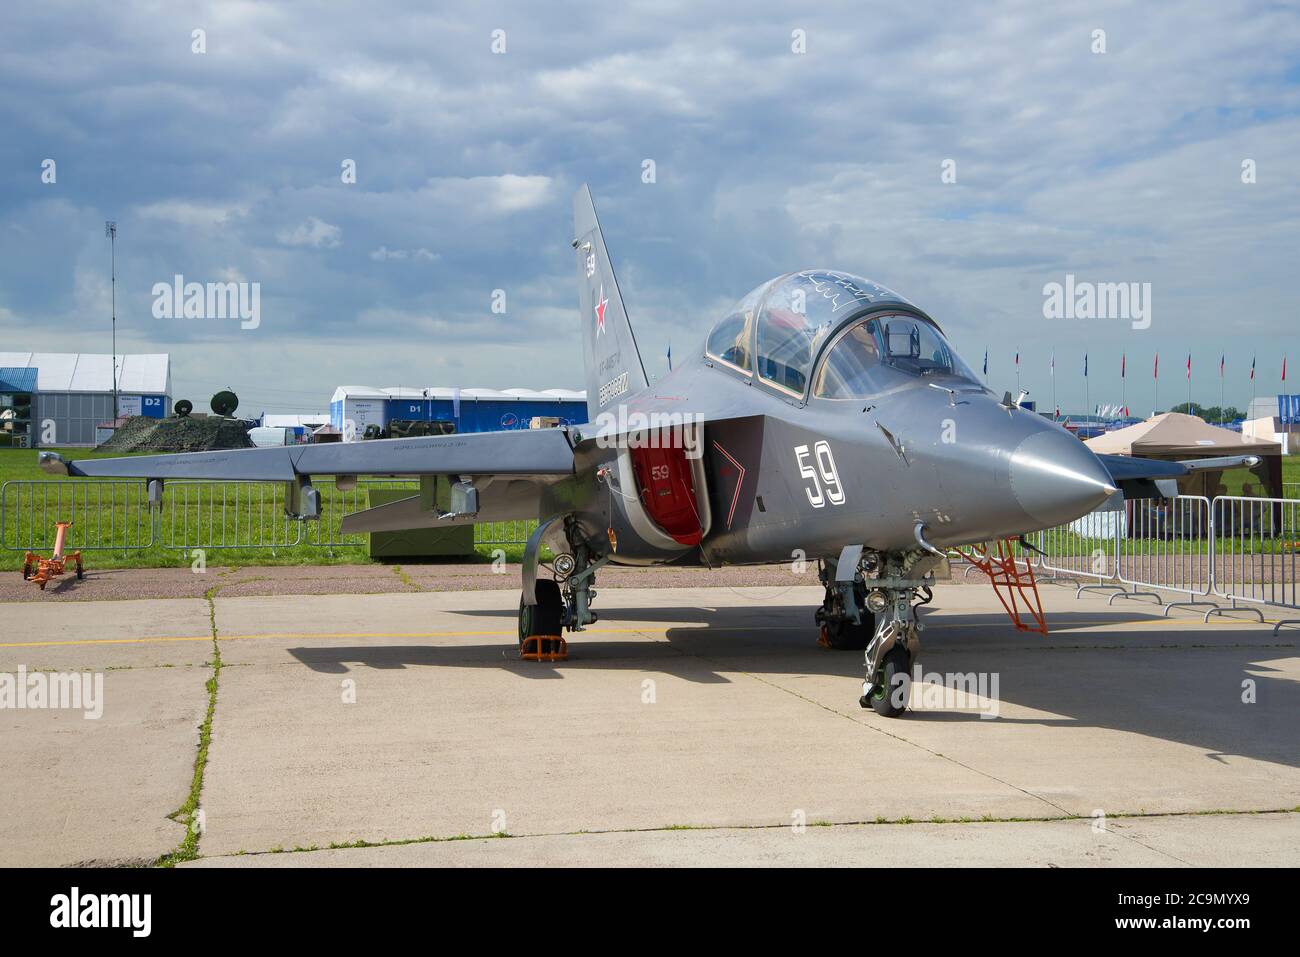 ZHUKOVSKY, RUSIA - 20 DE JULIO de 2017: Aviones de entrenamiento y combate Yak-130 en el espectáculo aéreo MAKS-2017 Foto de stock